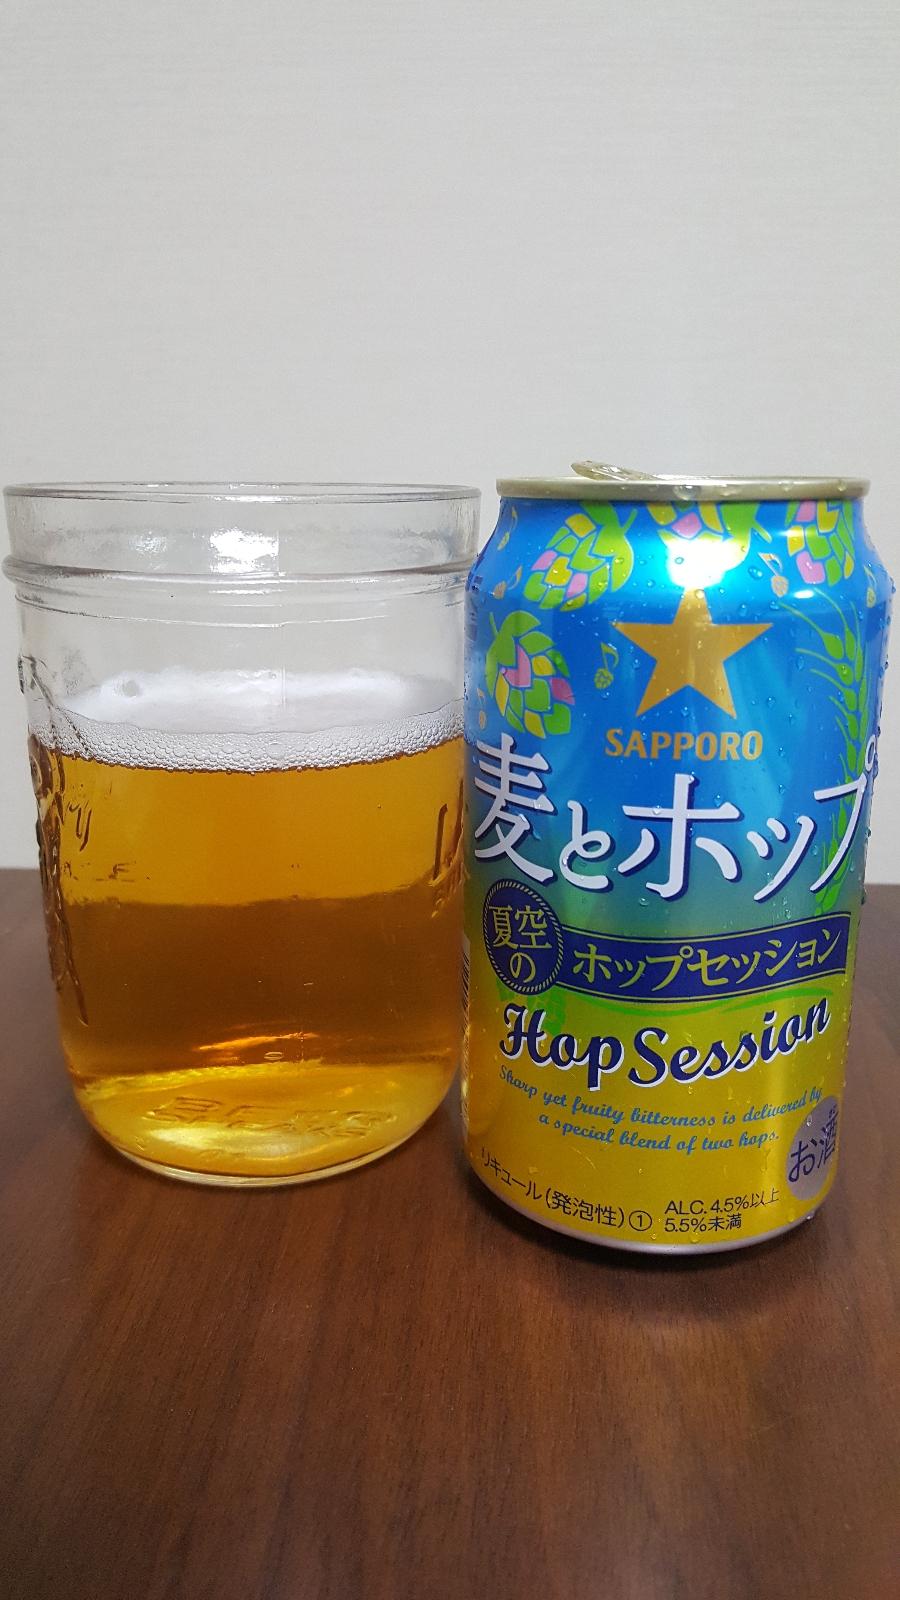 Mugi to Hop Natsu Zora no Hop Session (Summer Sky)